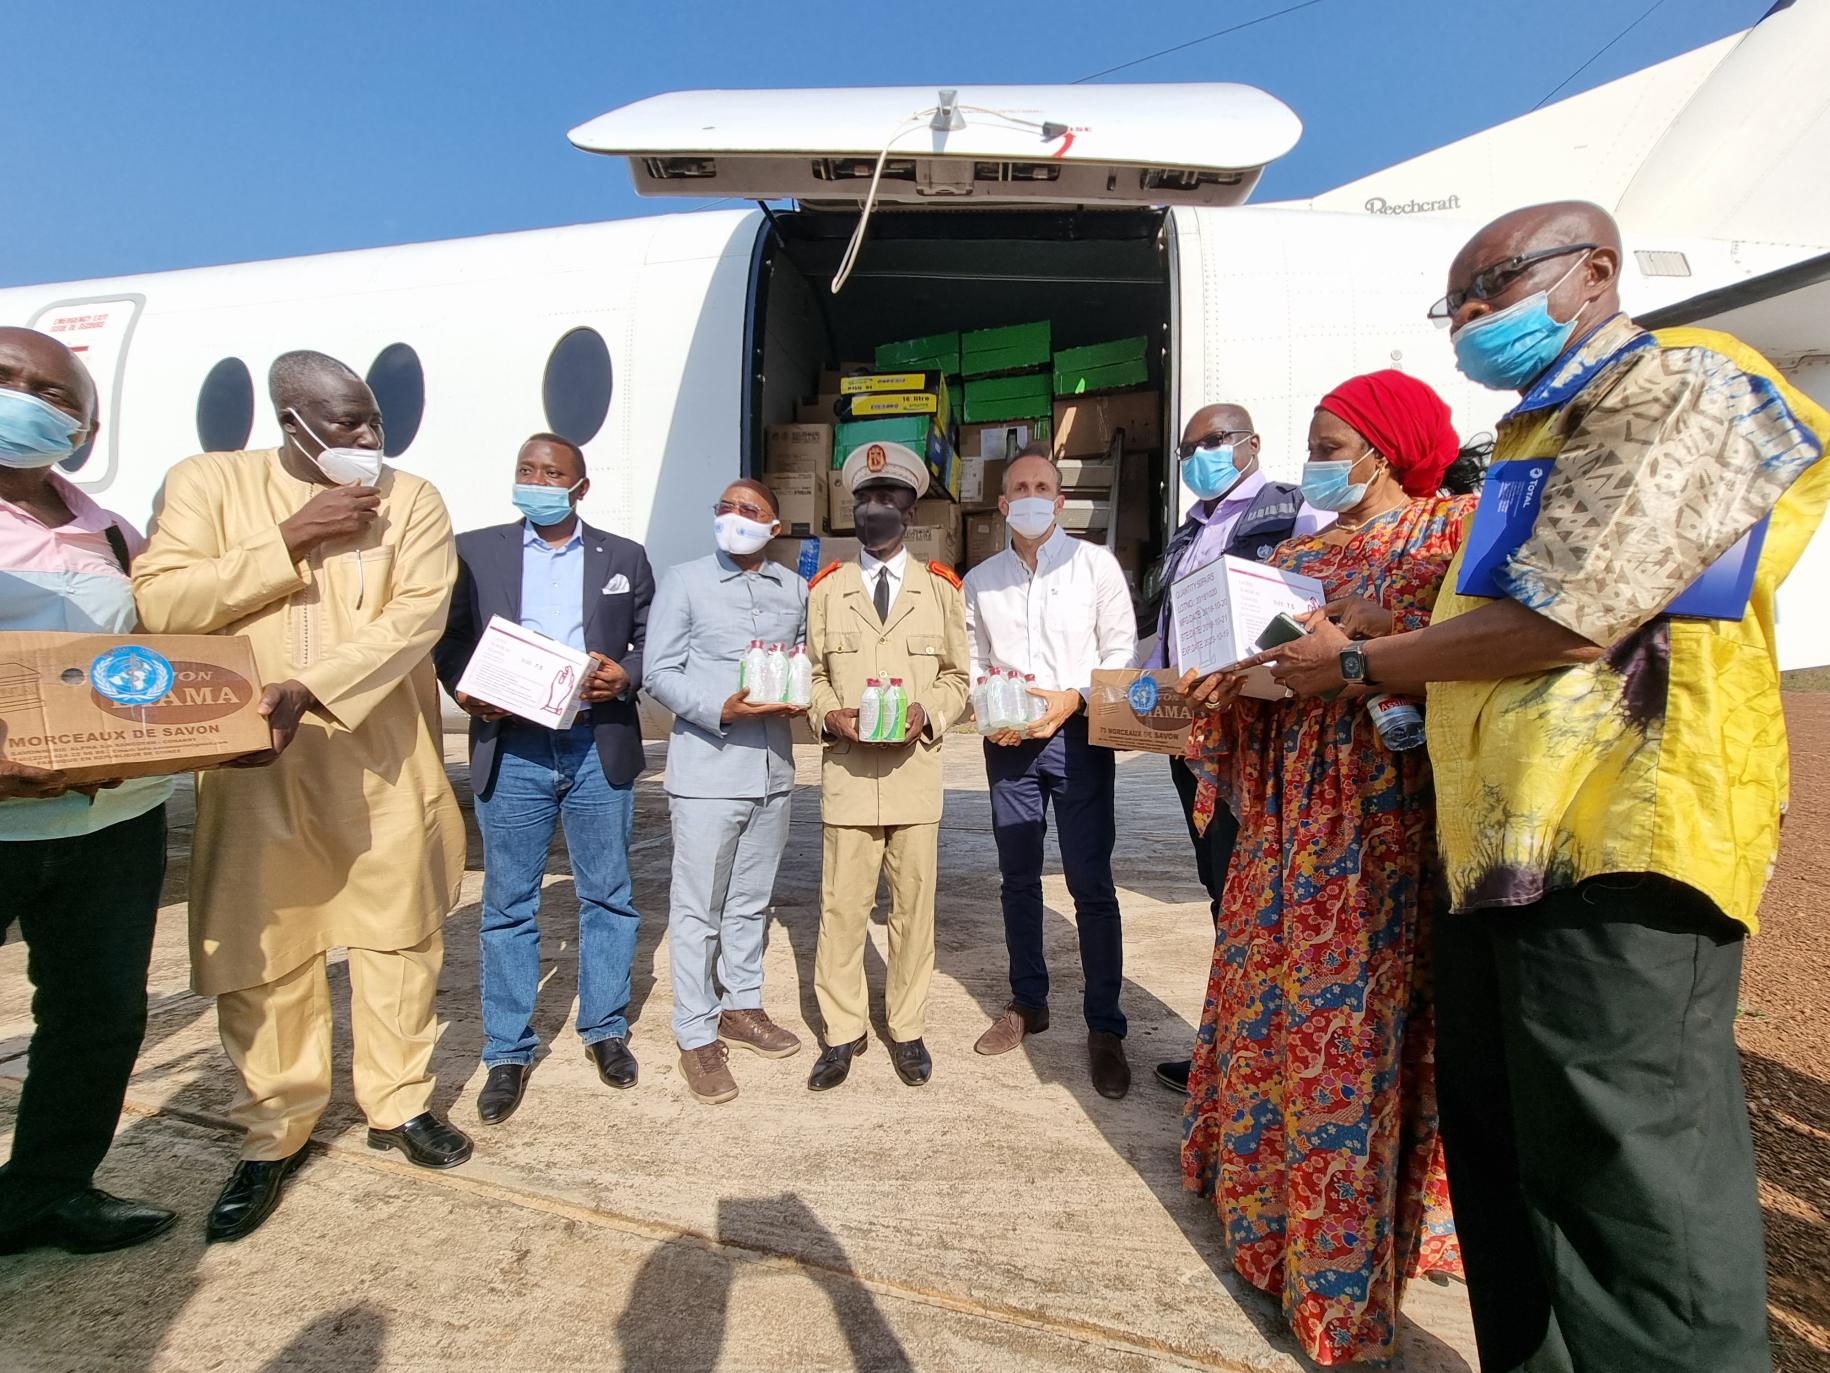 Plusieurs hommes et femmes portant des masques de protection, dont Vincent Martin, le Coordonnateur résident de l’ONU en Guinée, de tiennent debout, des fournitures dans les mains, devant la porte ouverte d'un avion.